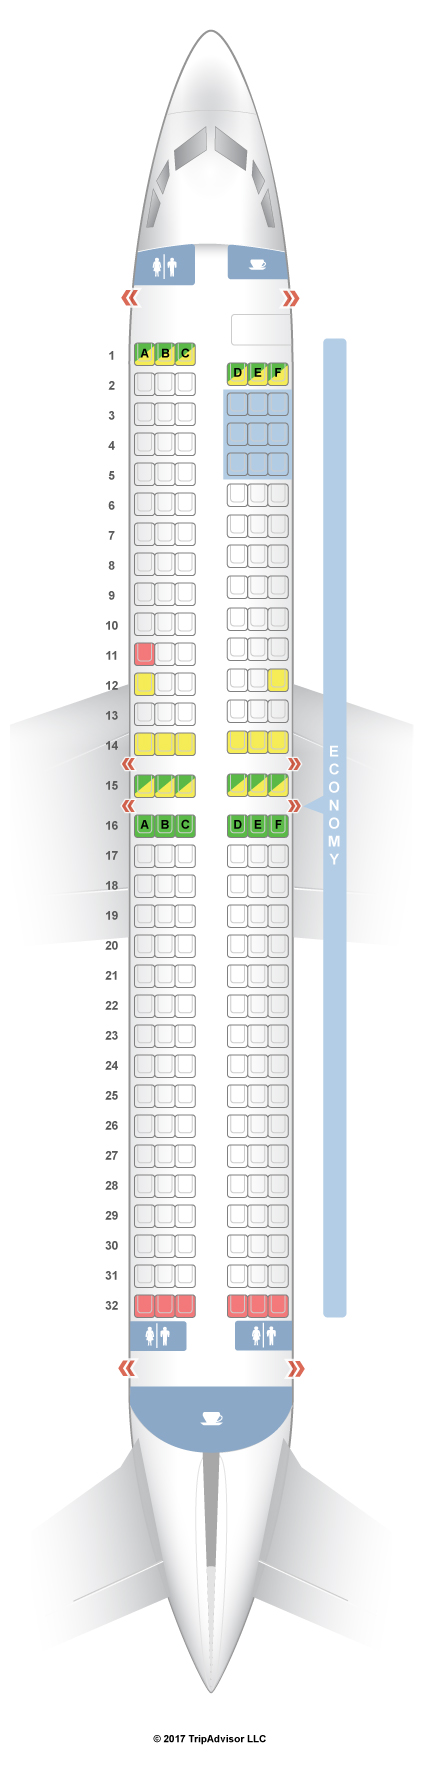 Delta Flight 484 Seating Chart